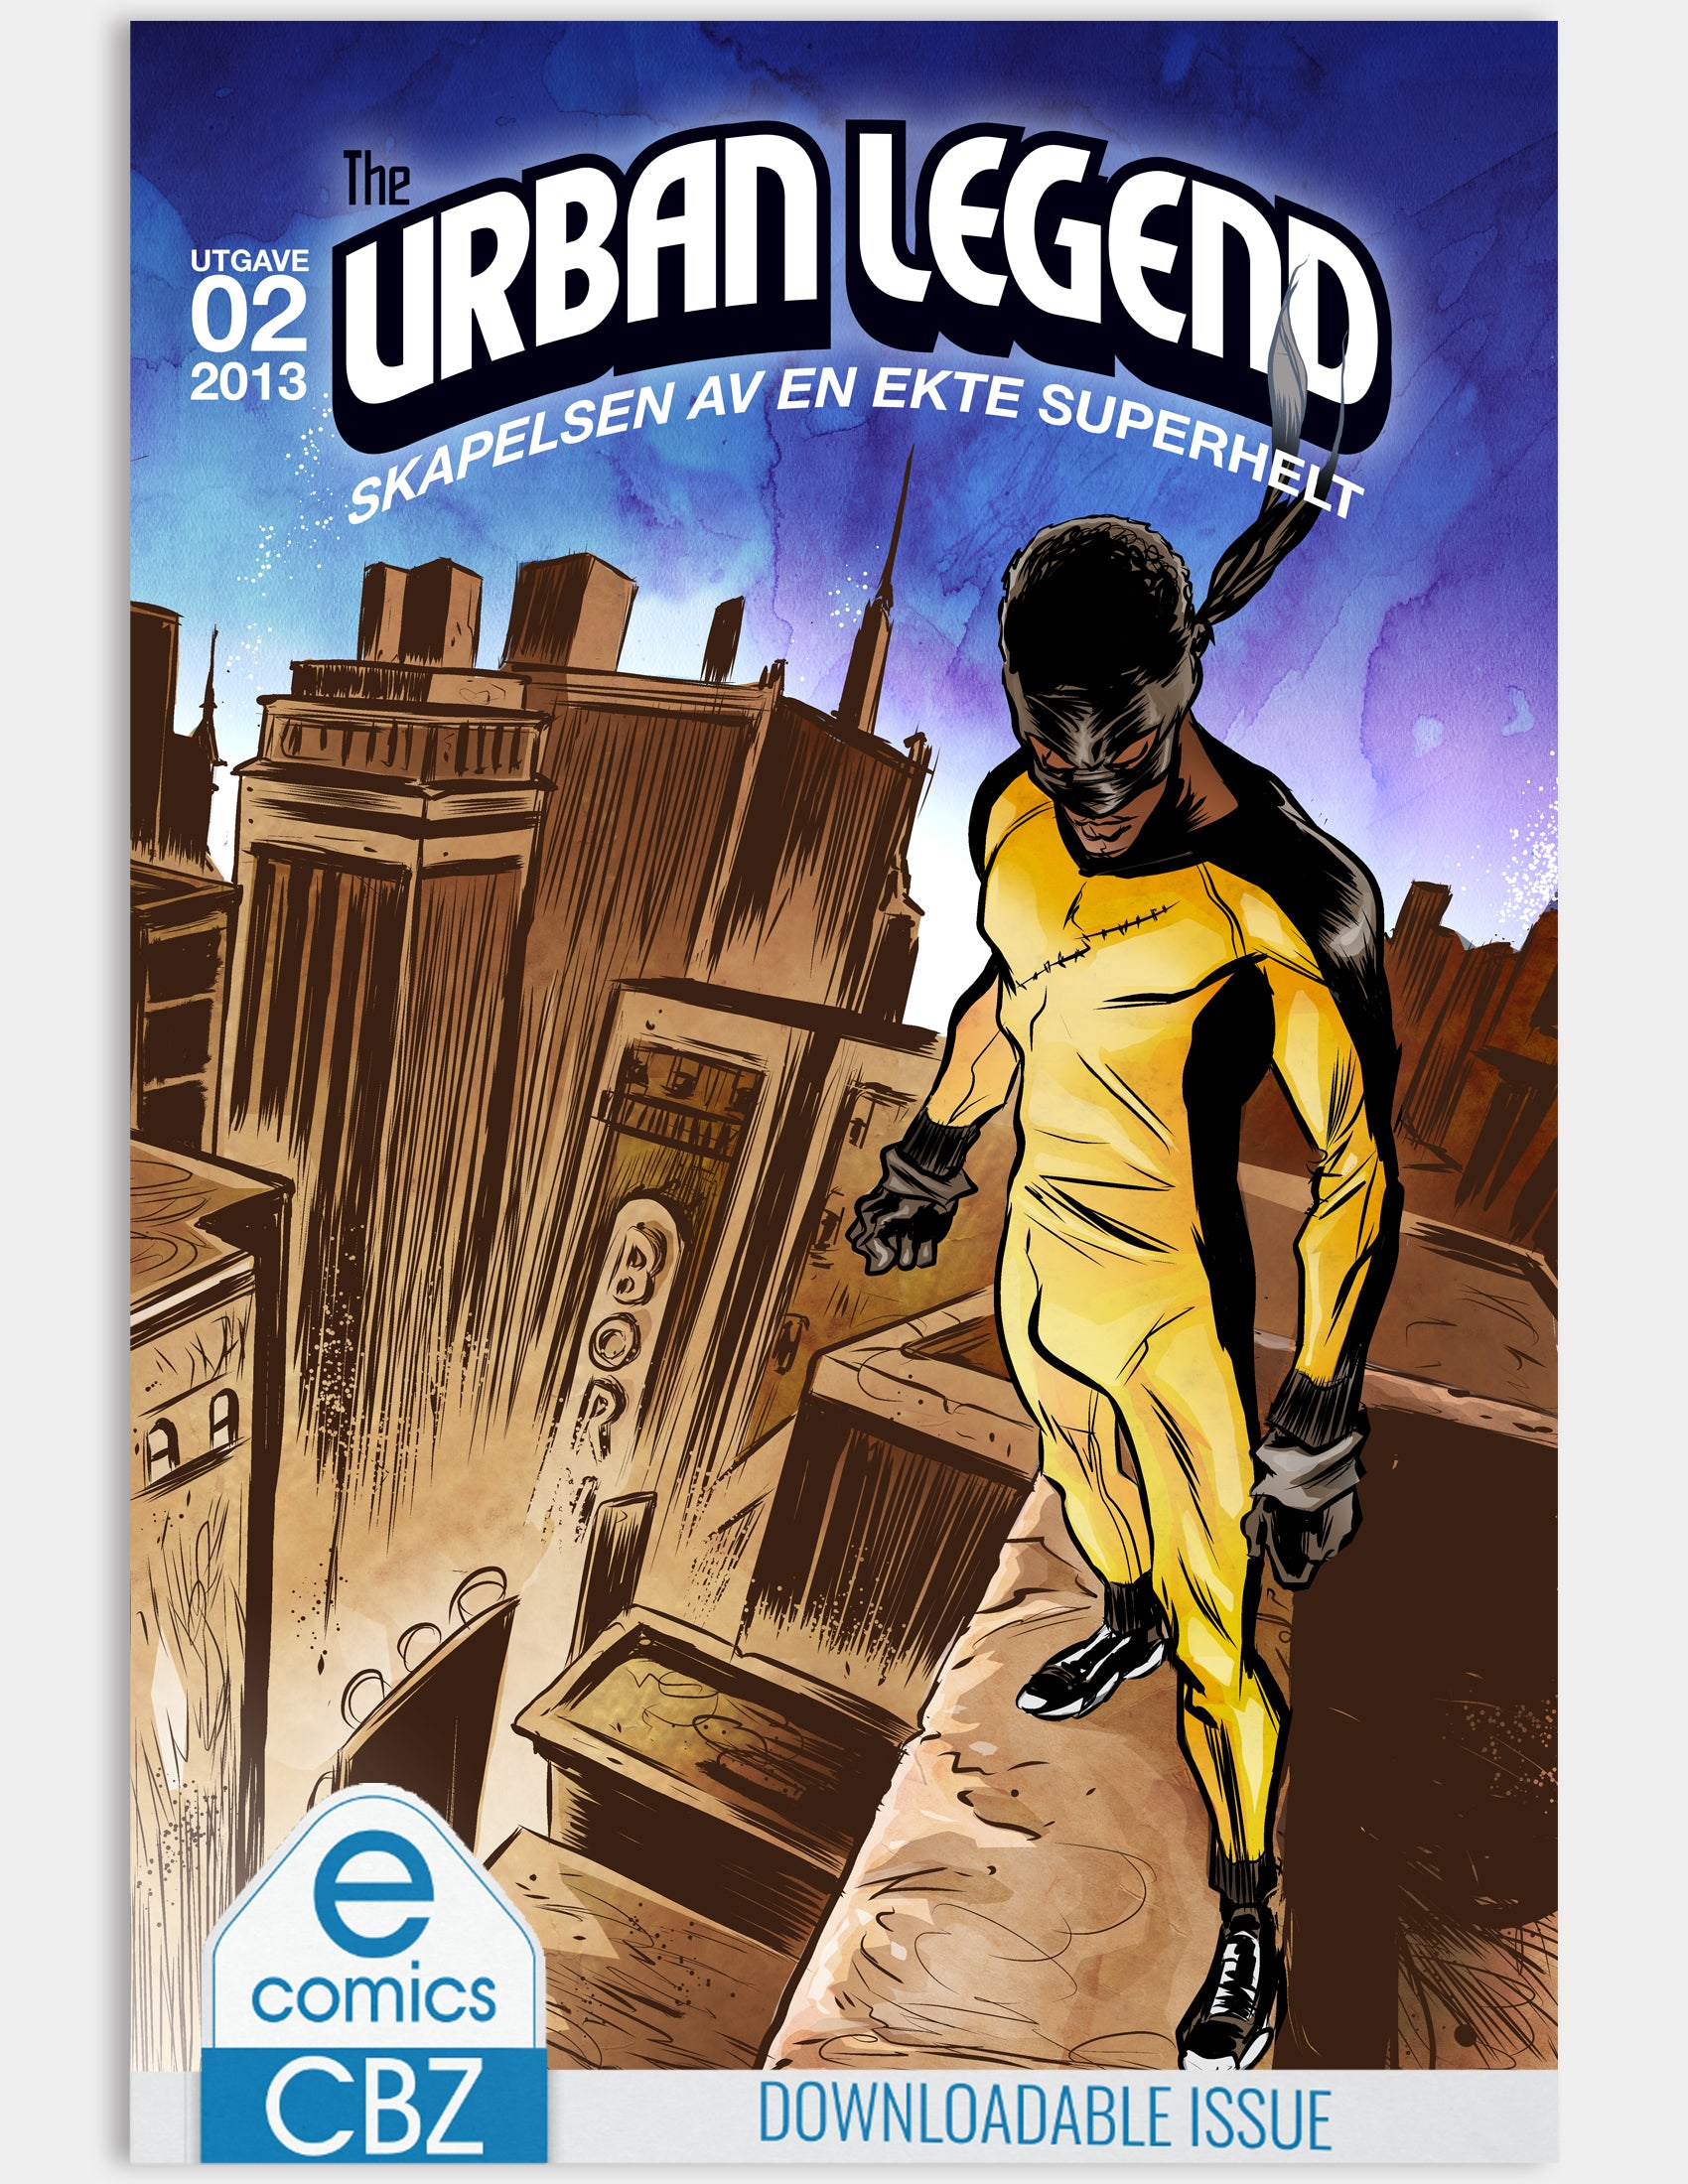 The Urban Legend - The Big Showdown (Issue 2 - Season 1) - Digital Issue